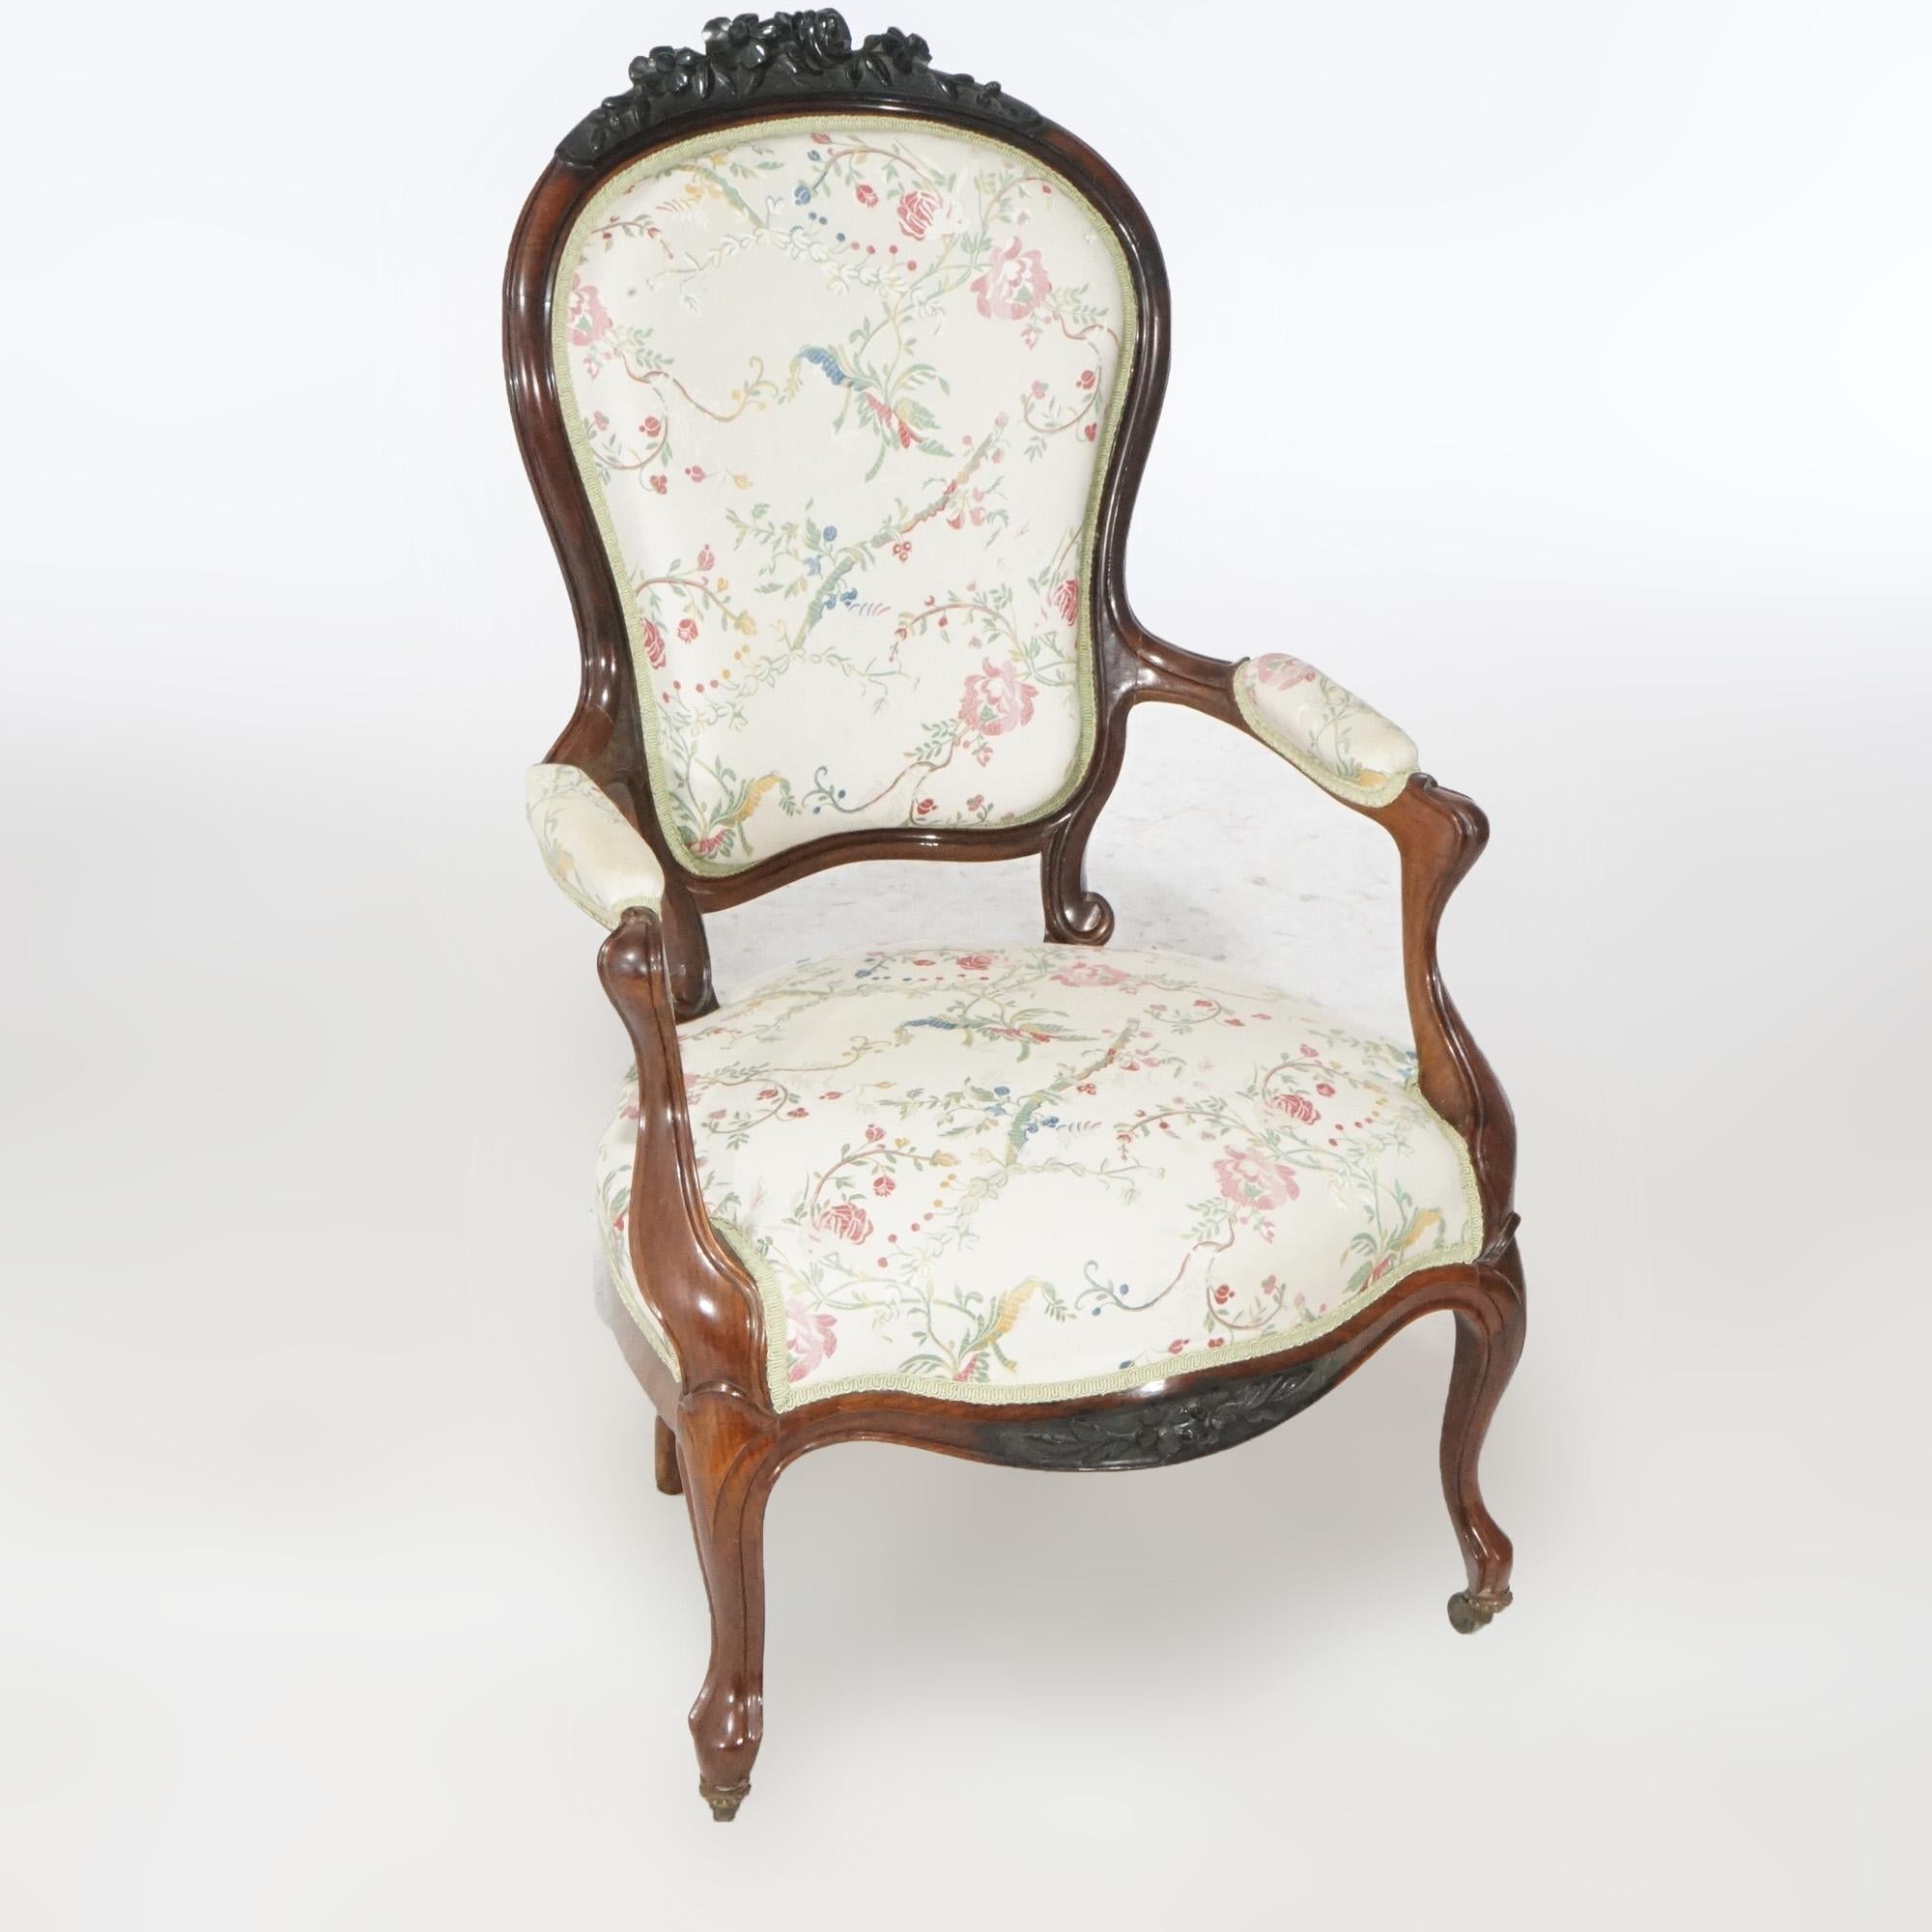 Paire de fauteuils de salon victoriens anciens, en bois de rose, avec une crête florale sculptée sur une assise, des accoudoirs et des dossiers rembourrés, reposant sur des pieds cabriolets, vers 1890.

Dimensions : 41,5''H x 25,25''L x 28''P.